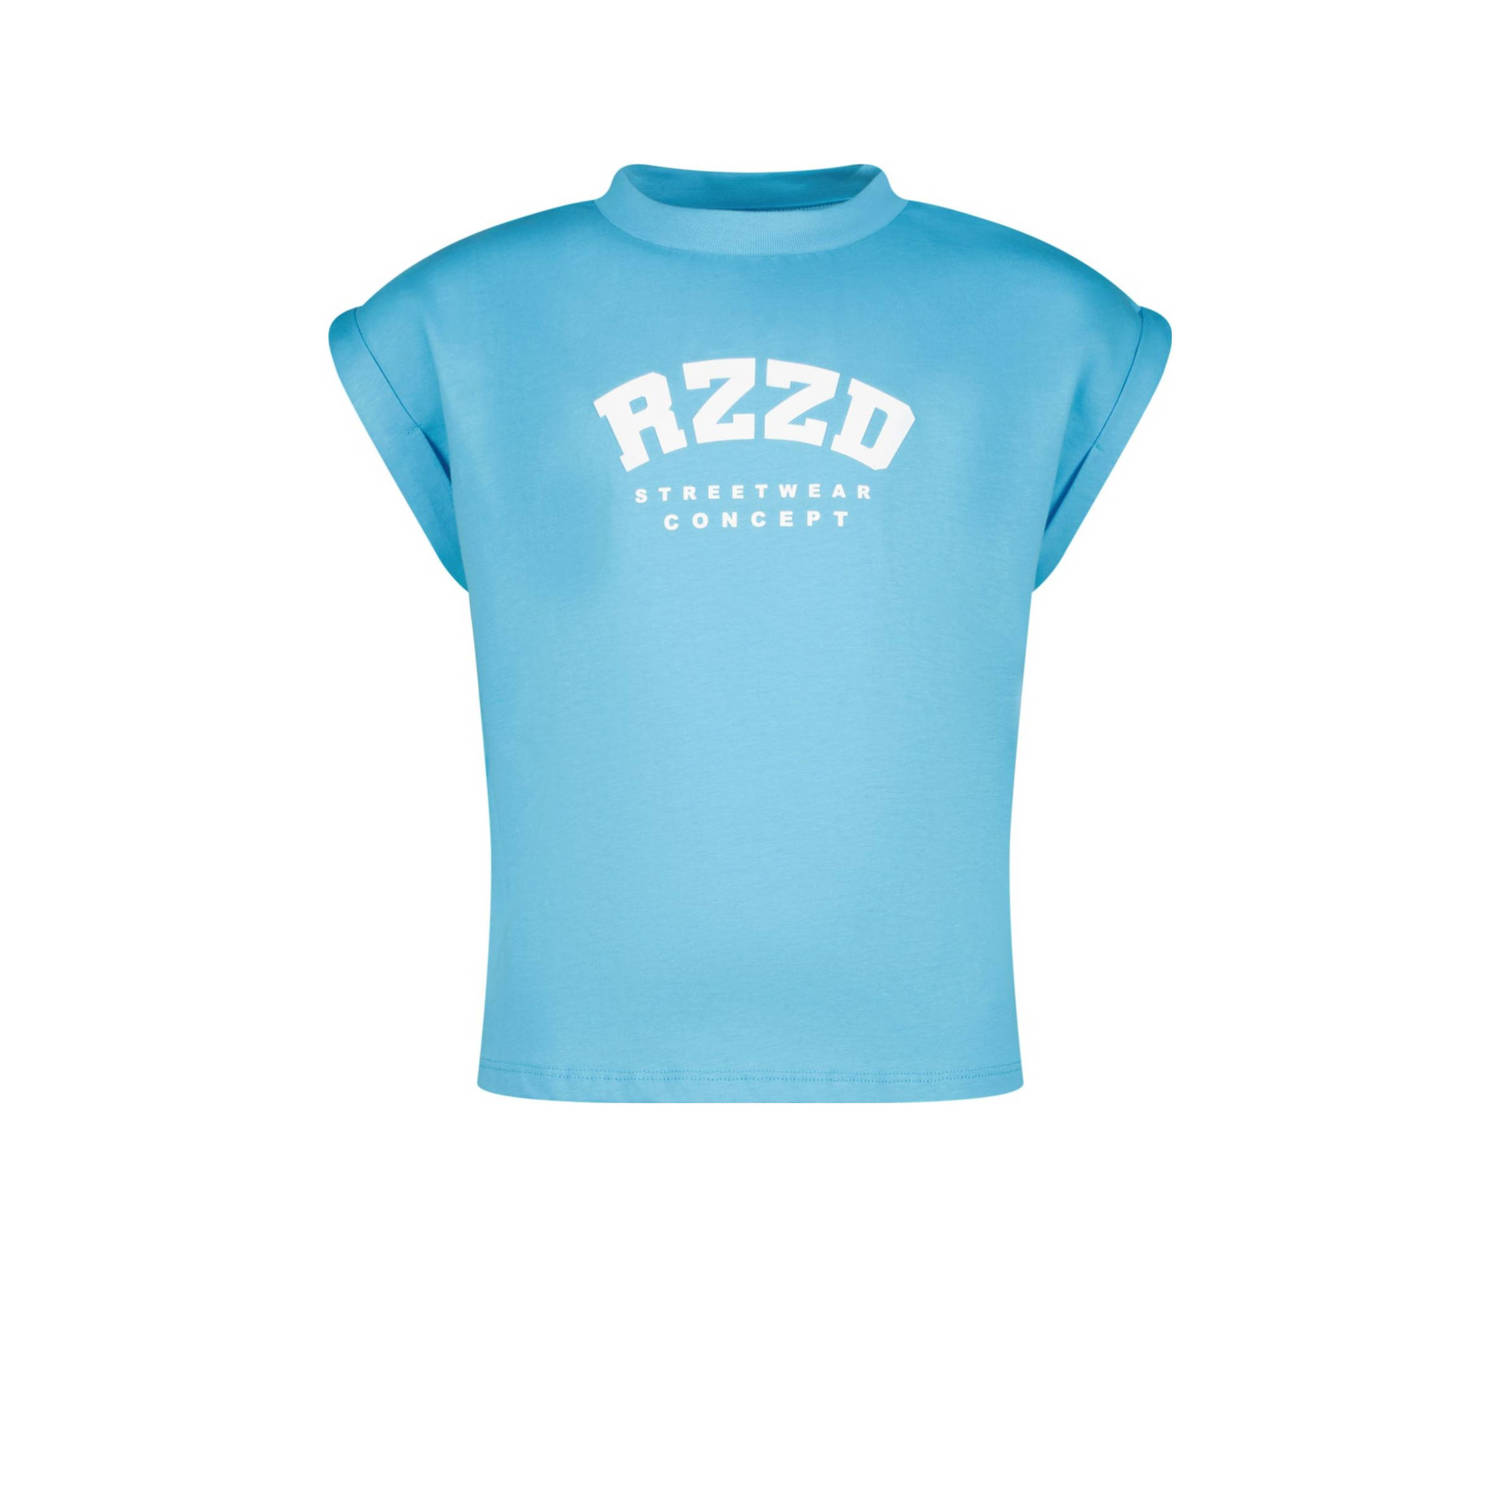 Raizzed T-shirt Merena met logo helderblauw Meisjes Katoen Ronde hals Logo 140